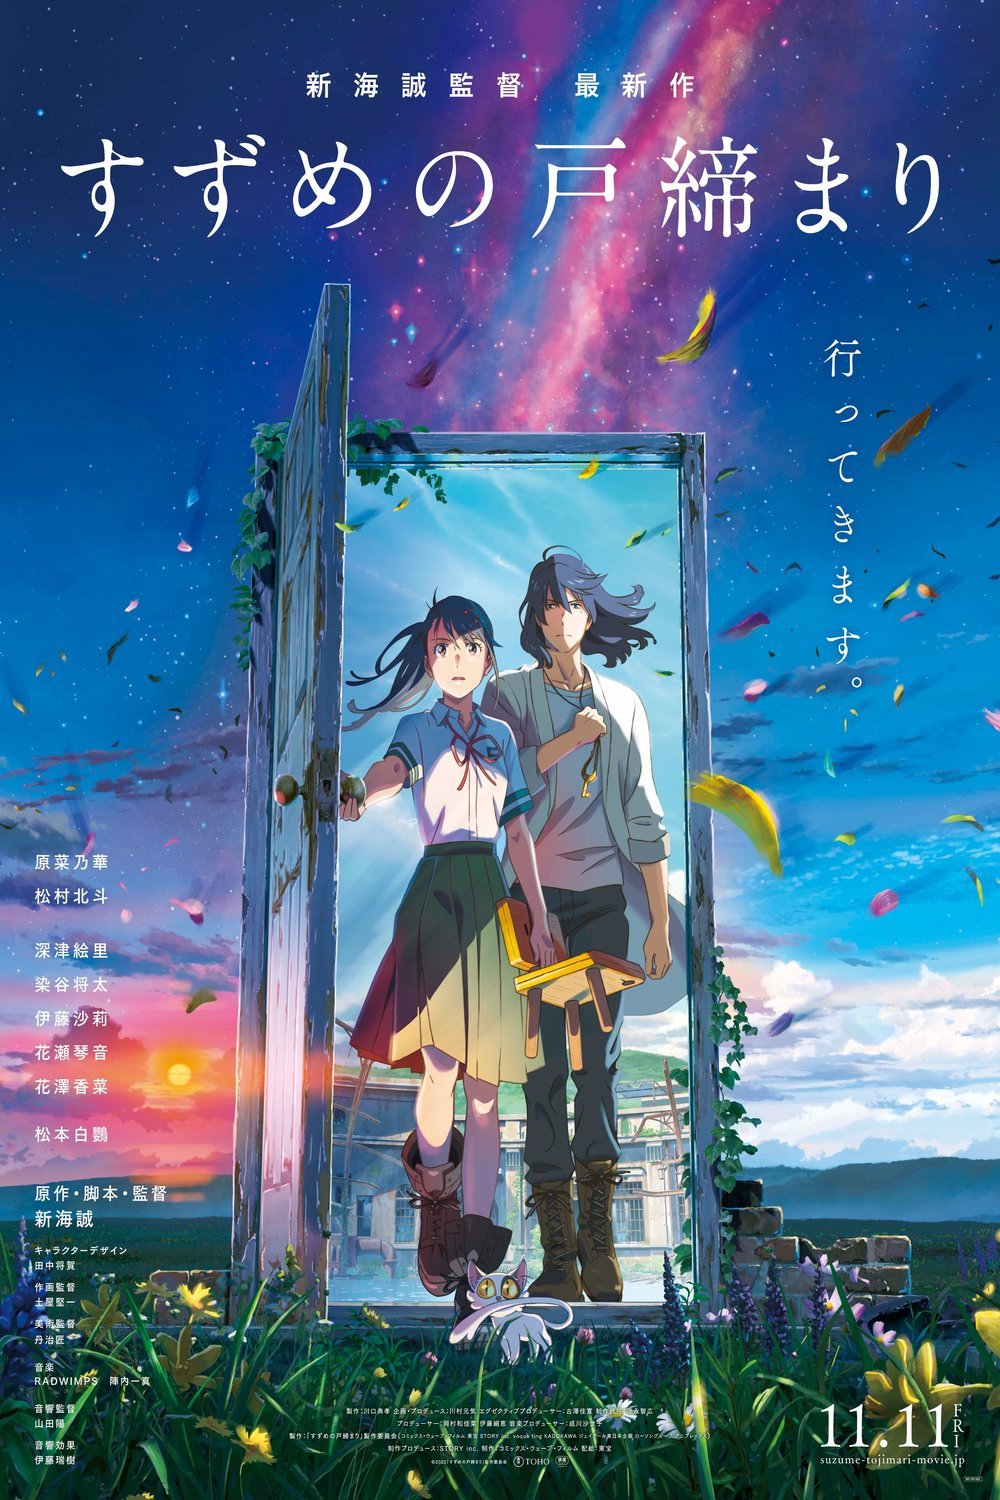 Japanese poster of the movie Suzume no tojimari